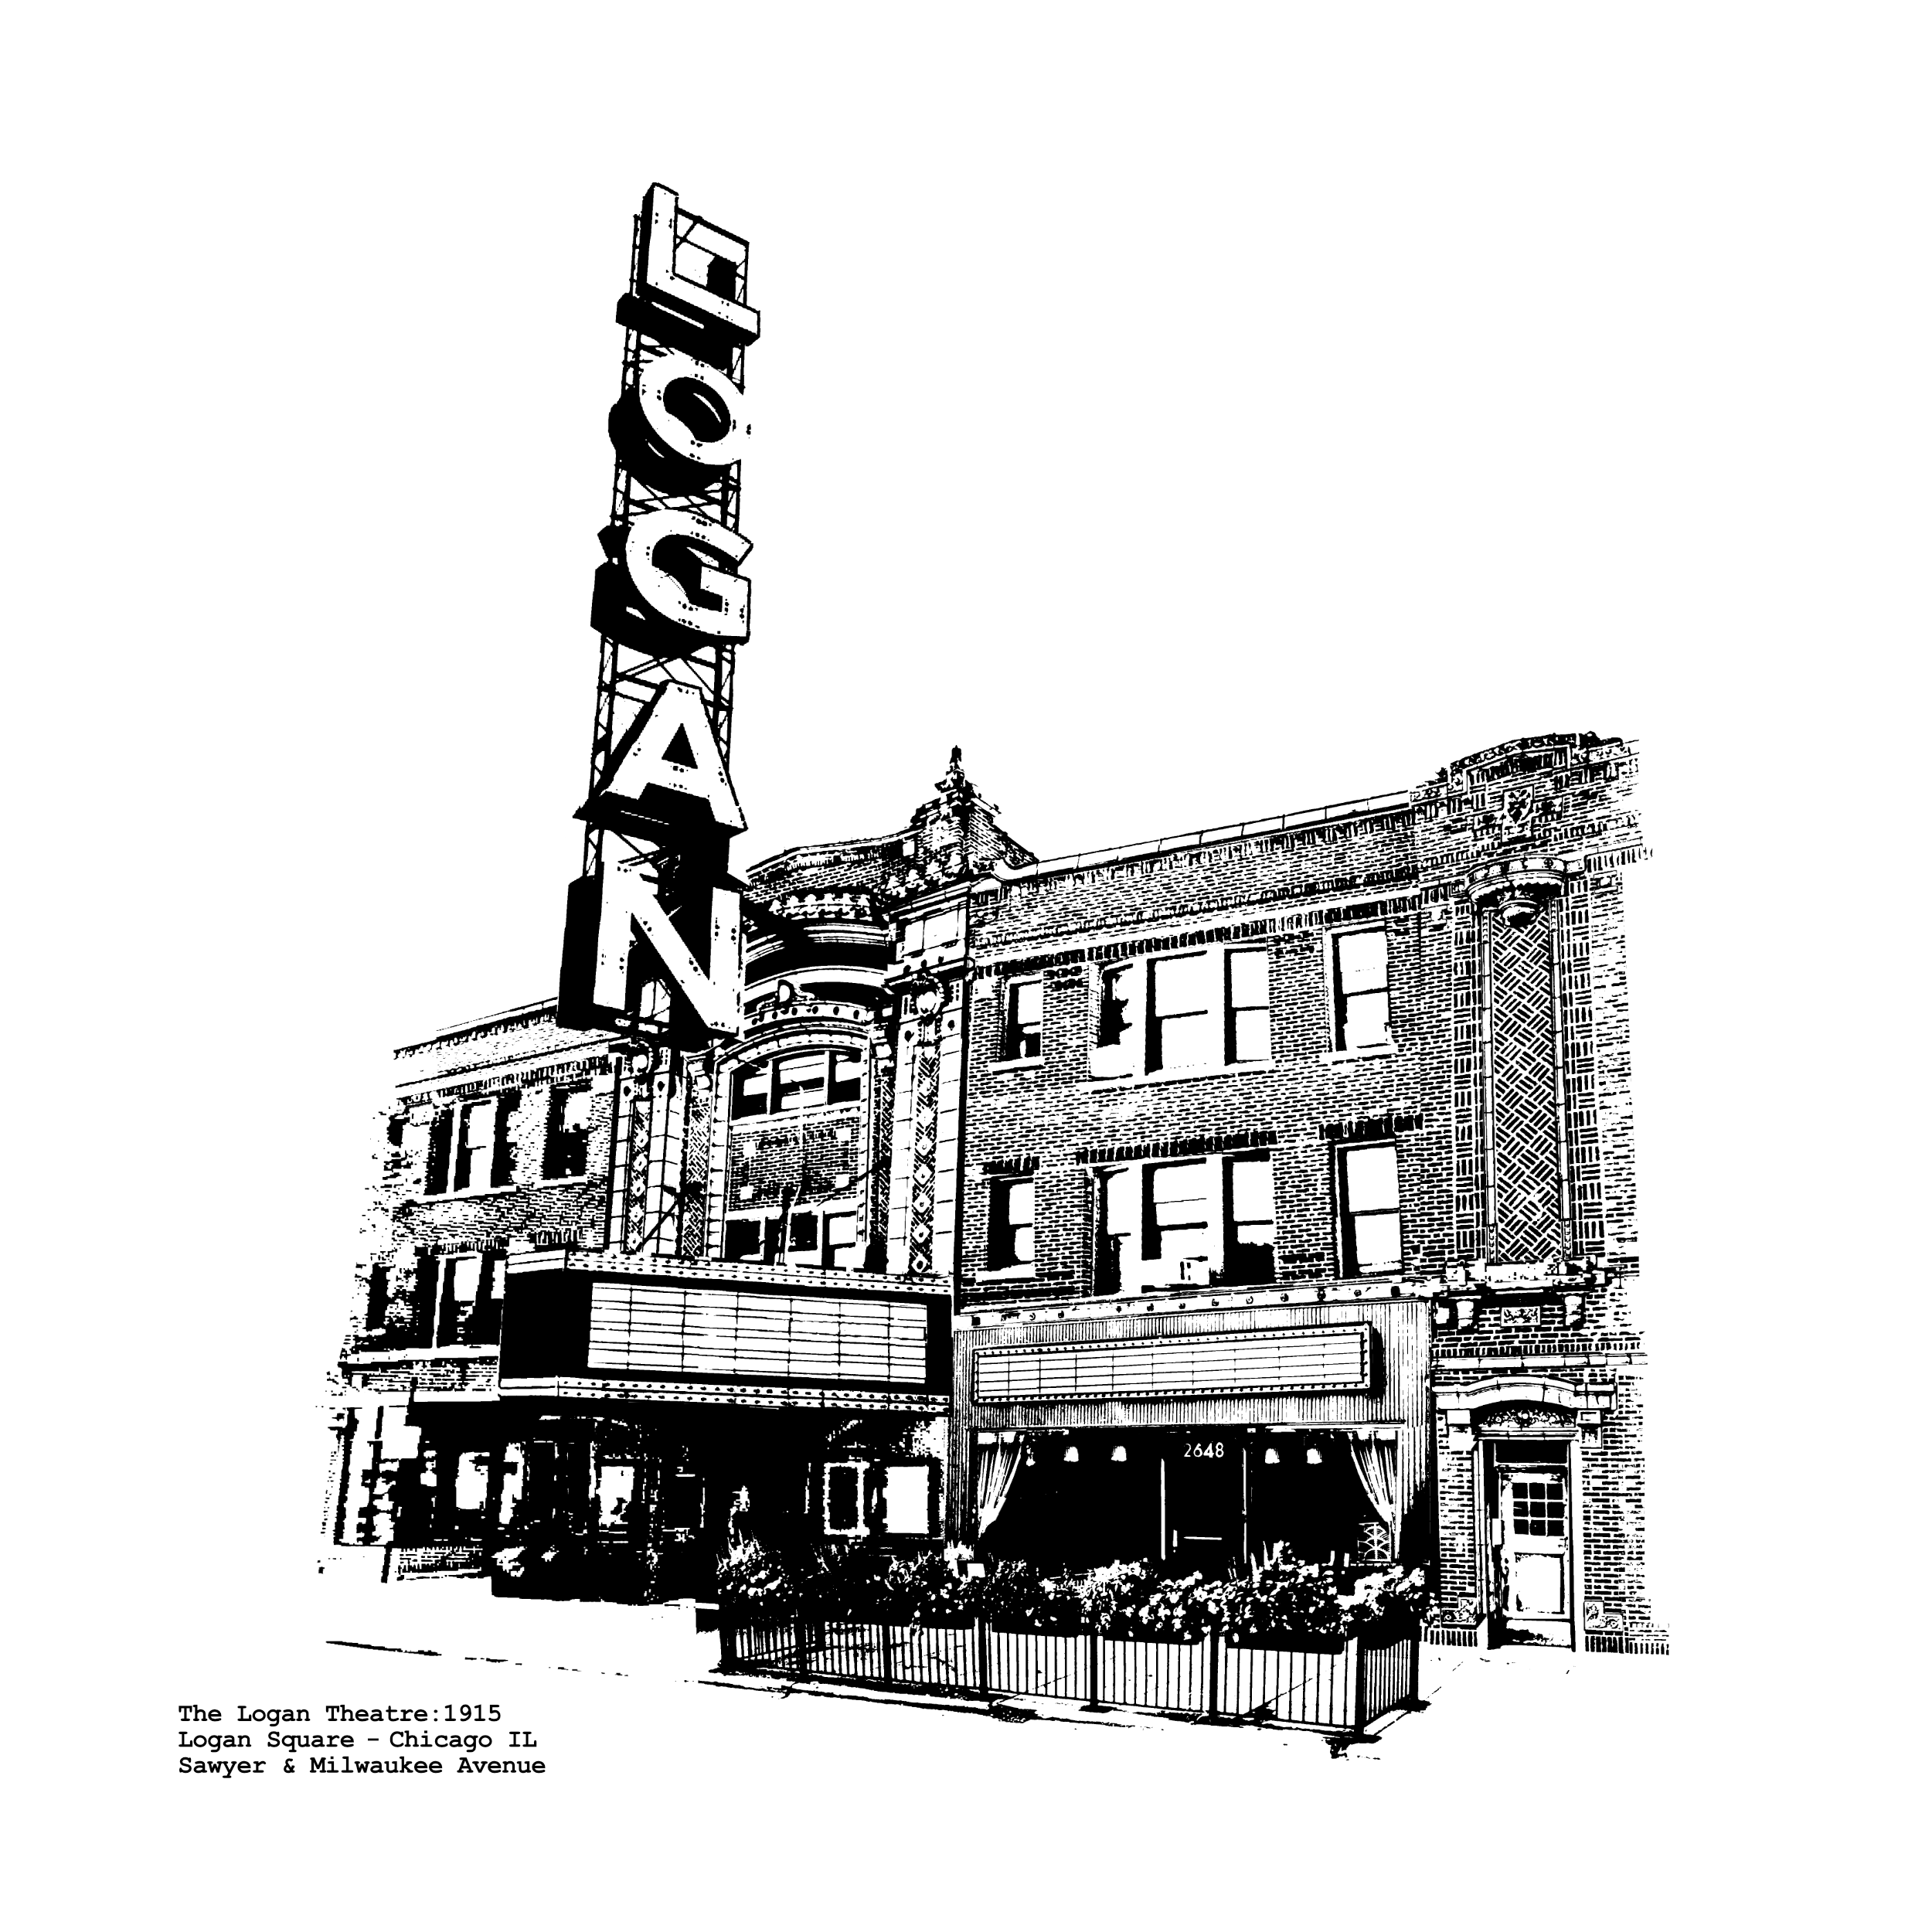 Logan Theatre - Logan Square - Chicago IL